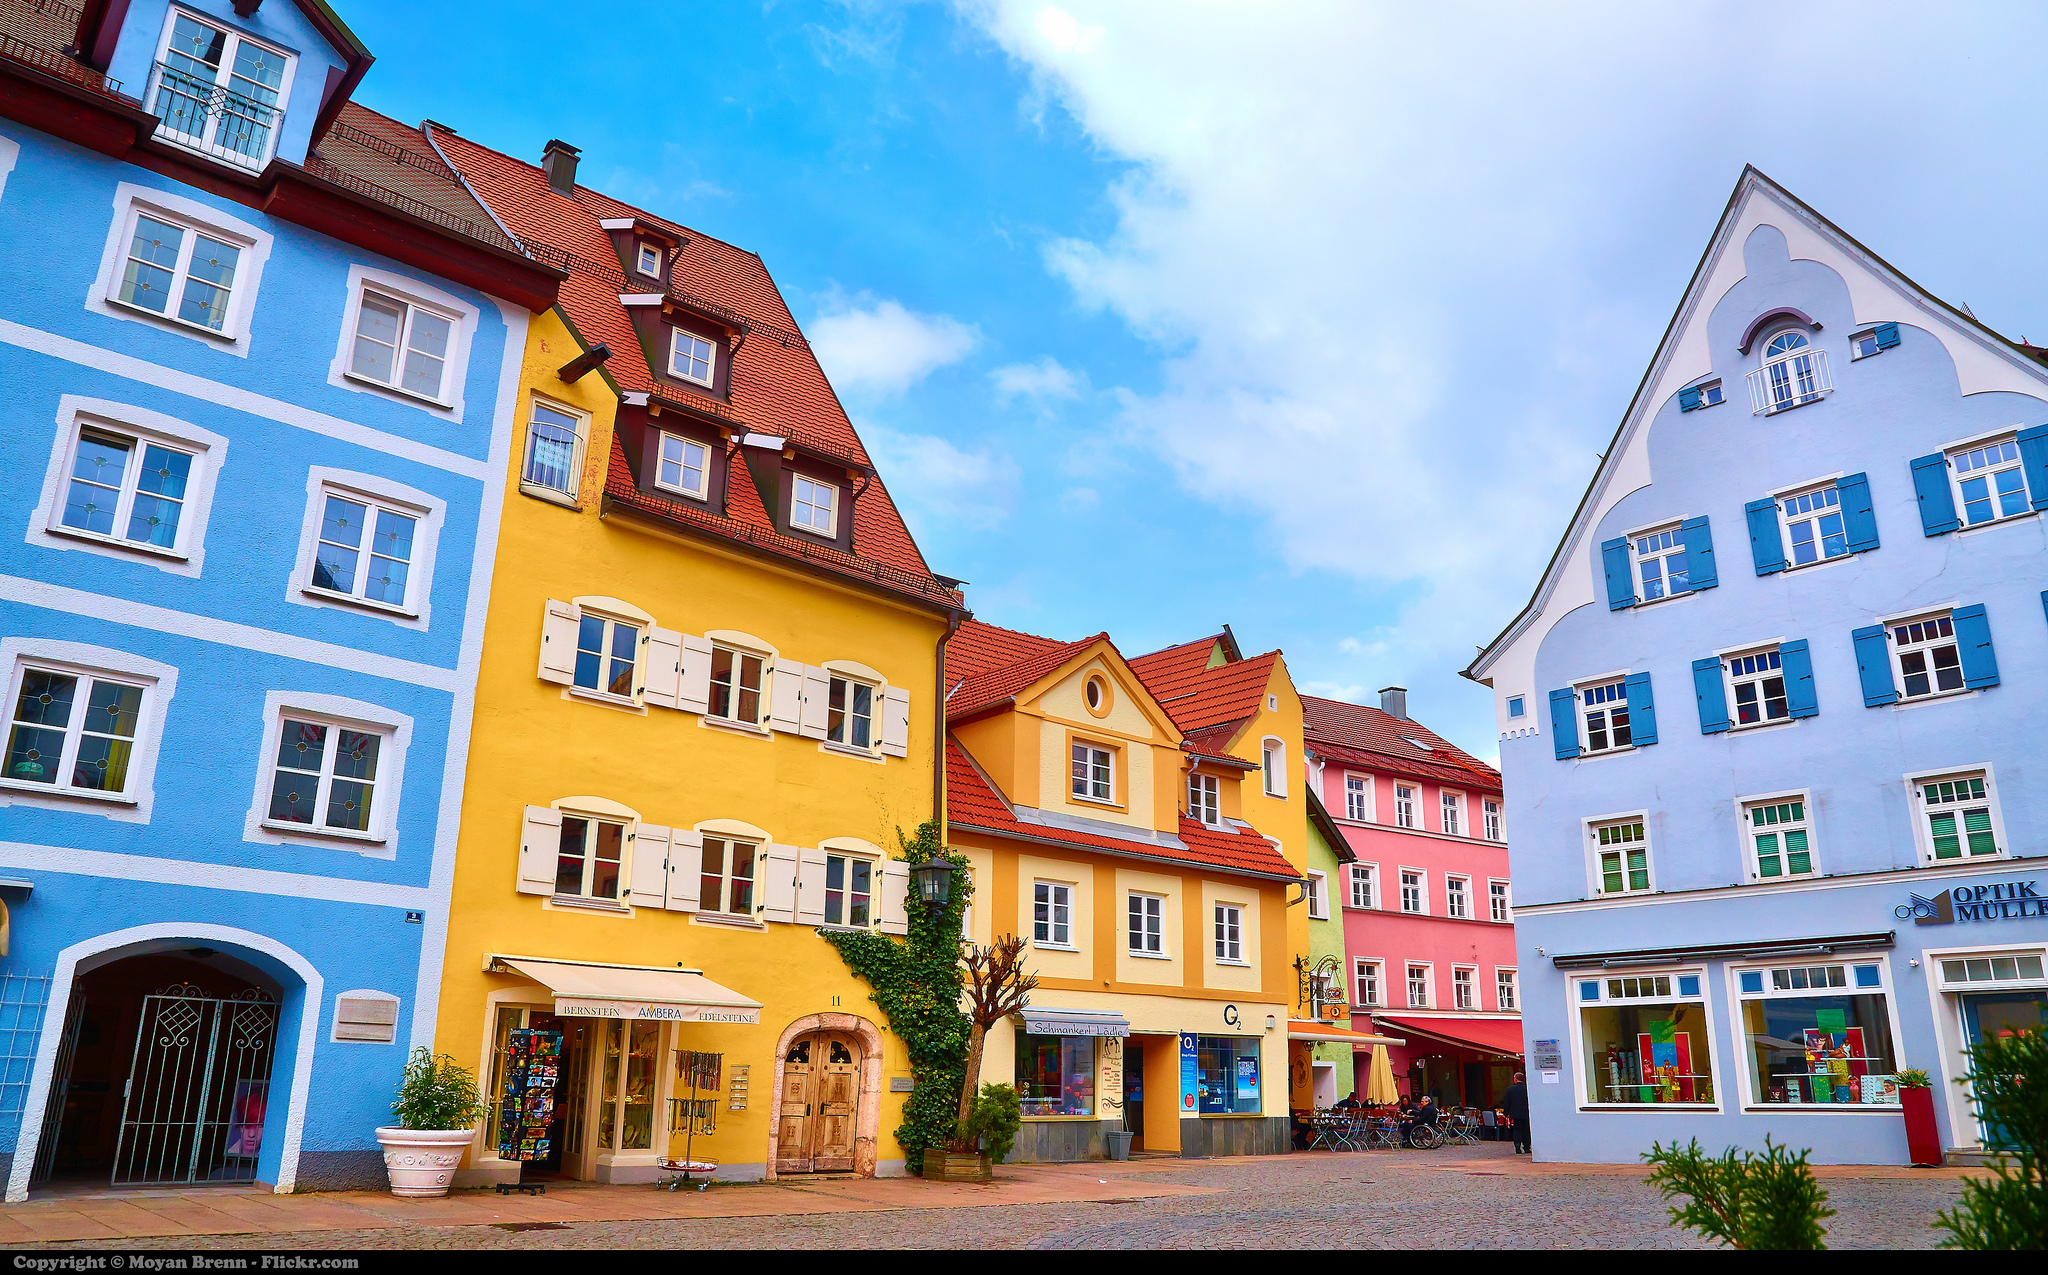 Ανθίζει το real estate στη Γερμανία